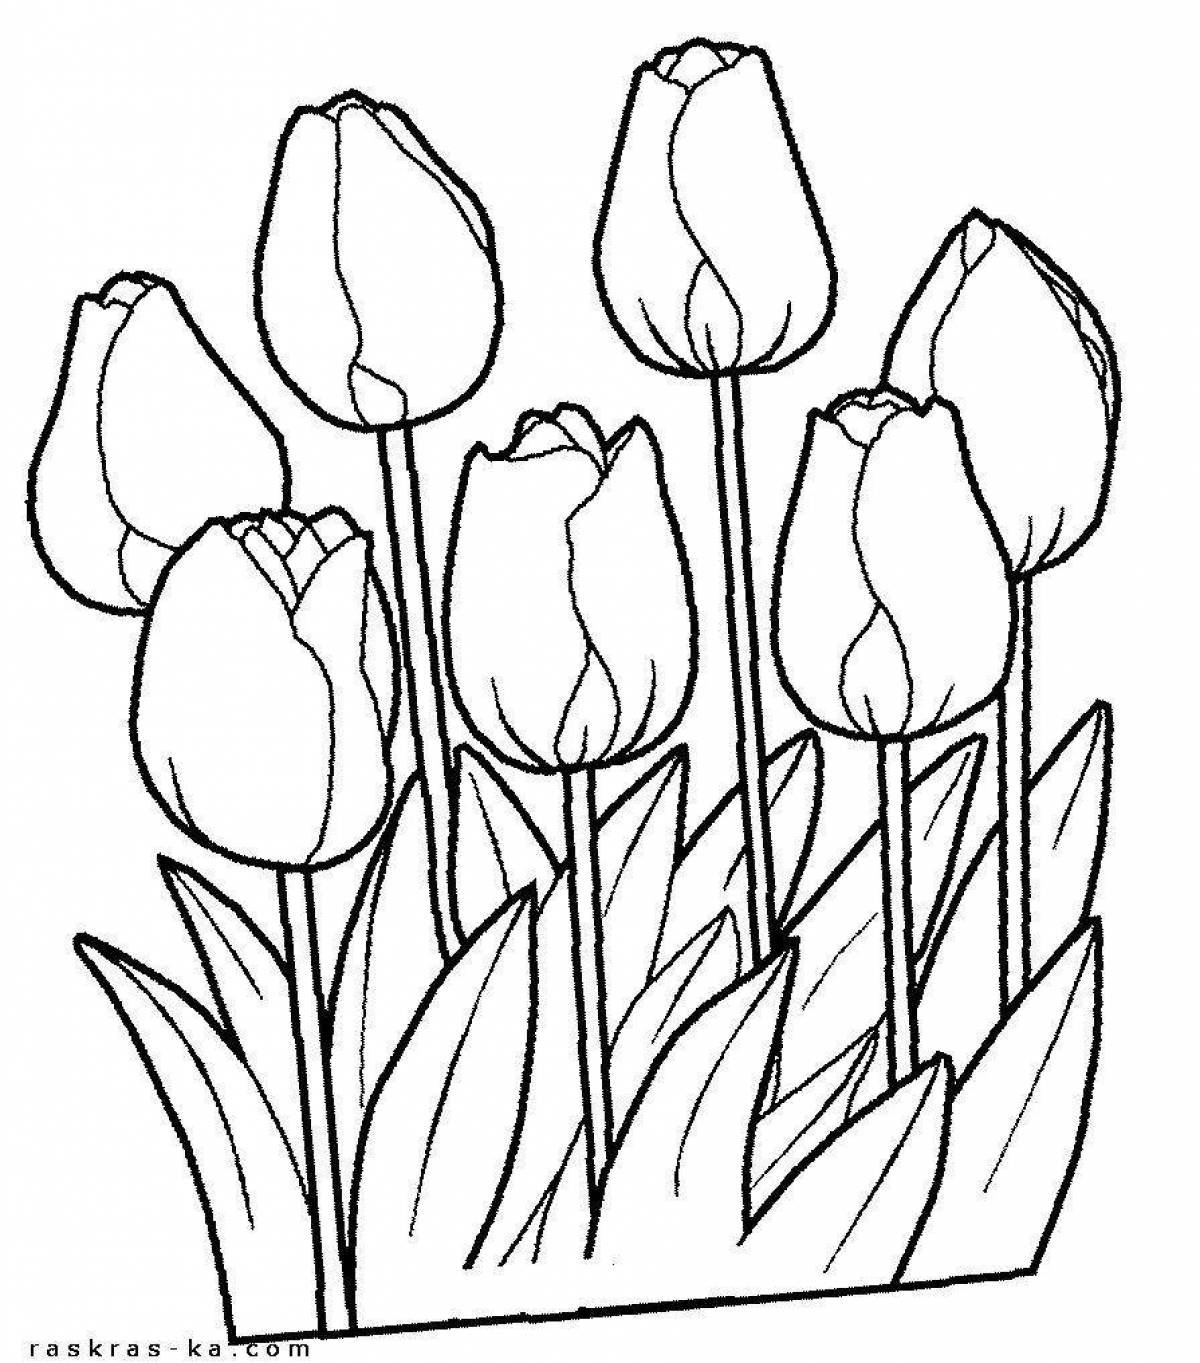 Как нарисовать весенние цветы. Тюльпан раскраска. Букет тюльпанов раскраска. Раскраска цветы тюльпаны. Весенние цветы тюльпан раскраска.